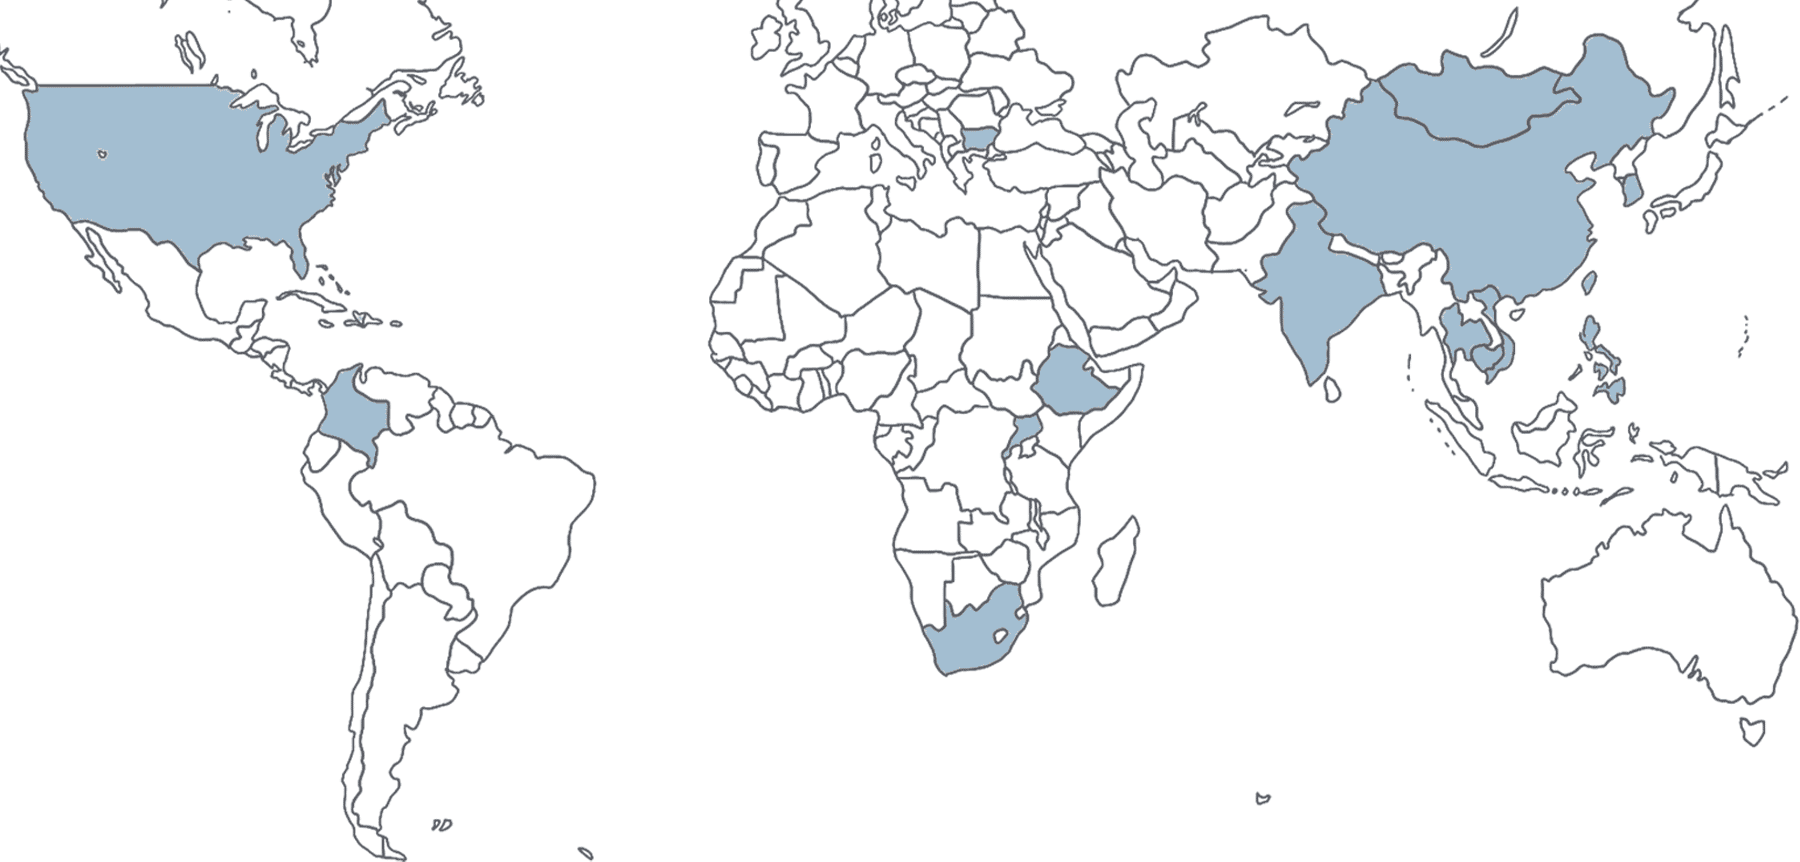 Holt world map